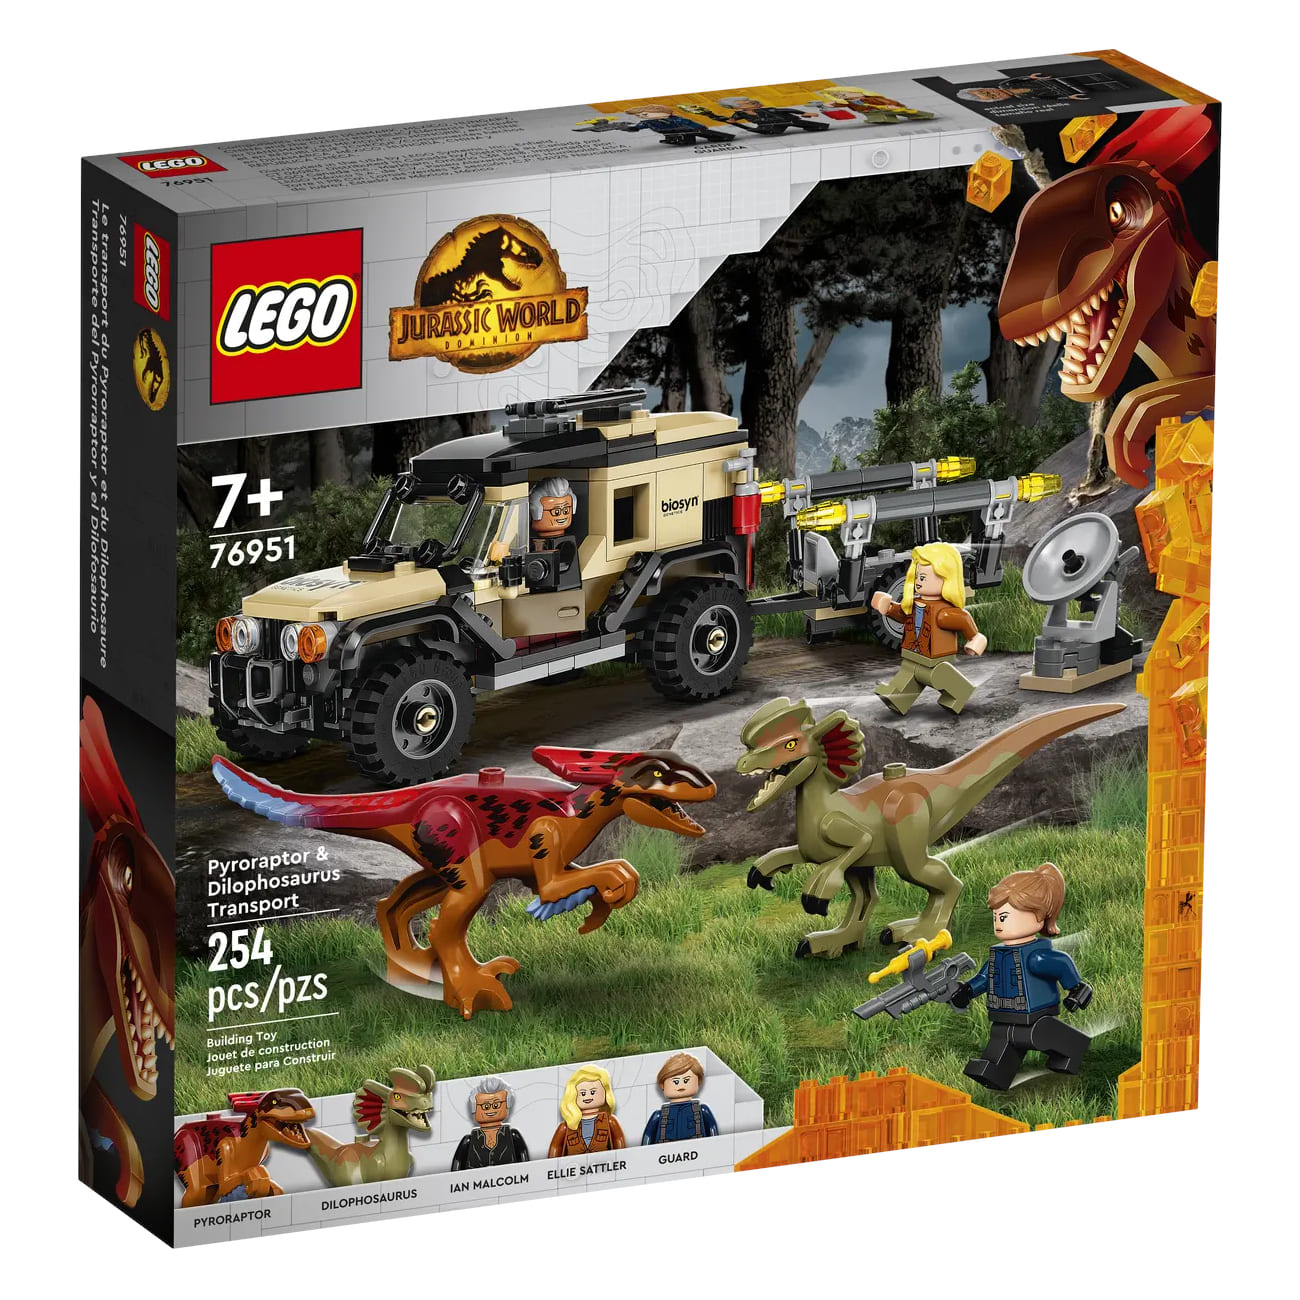 Конструктор LEGO Jurassic World Pyroraptor & Dilophosaurus Transport 76951, 254 детали конструктор lego jurassic world транспорт пирораптора и дилофозавра 76951